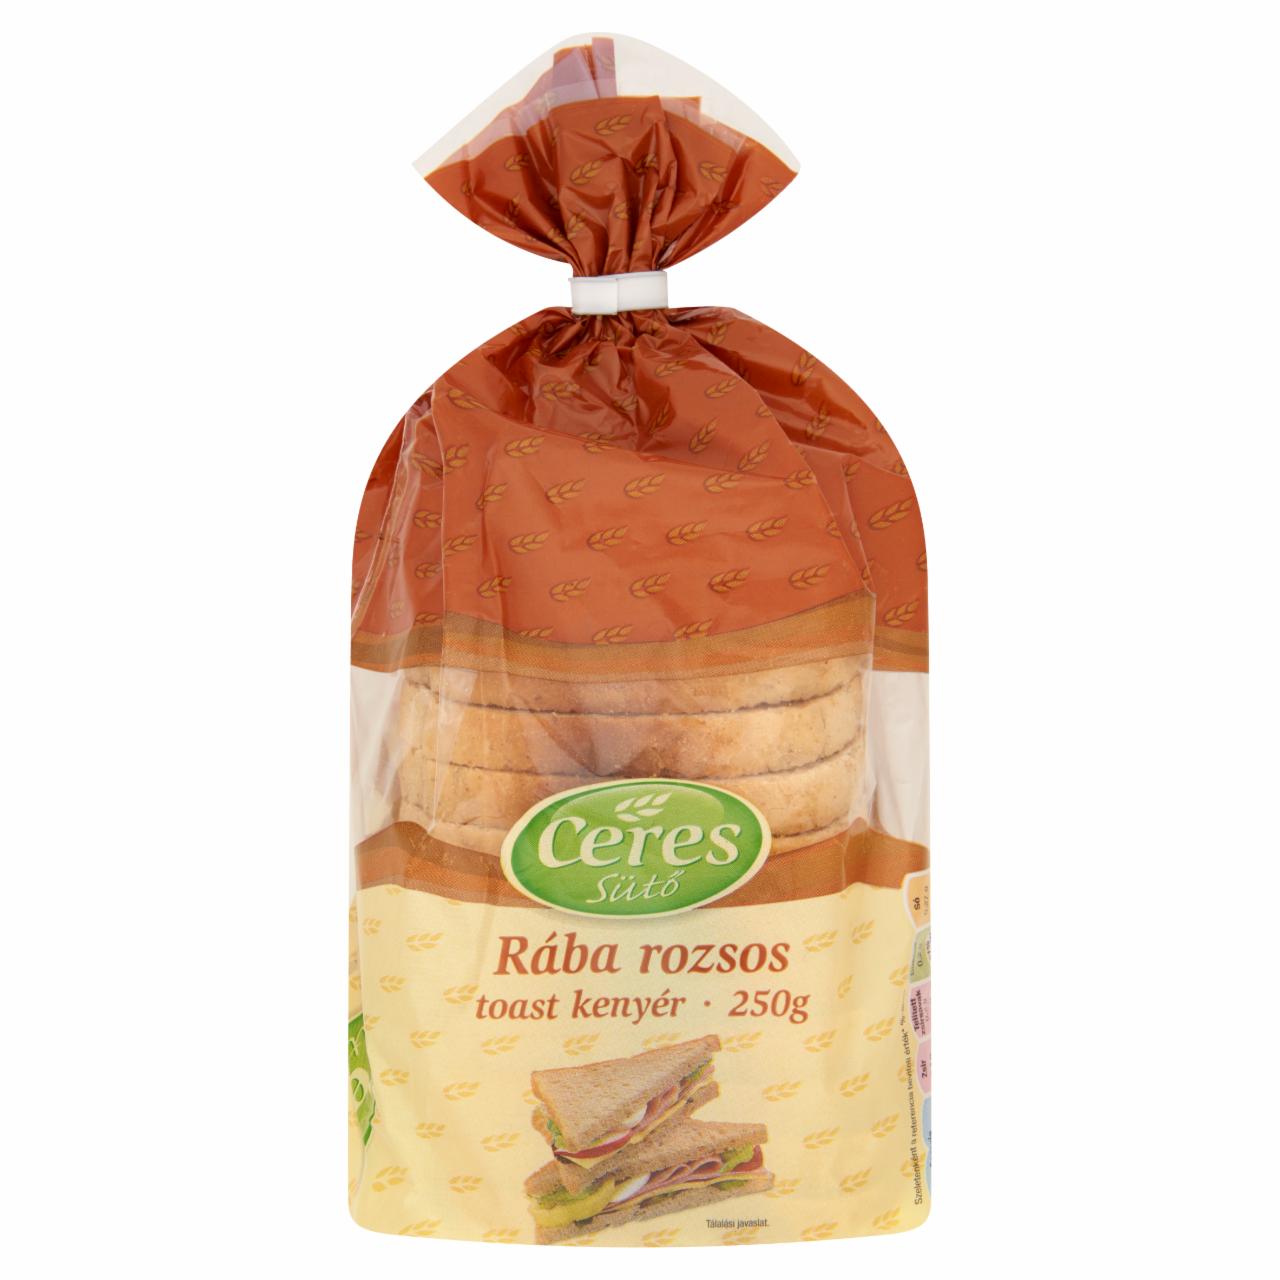 Képek - Ceres Sütő Rába rozsos toast kenyér 250 g